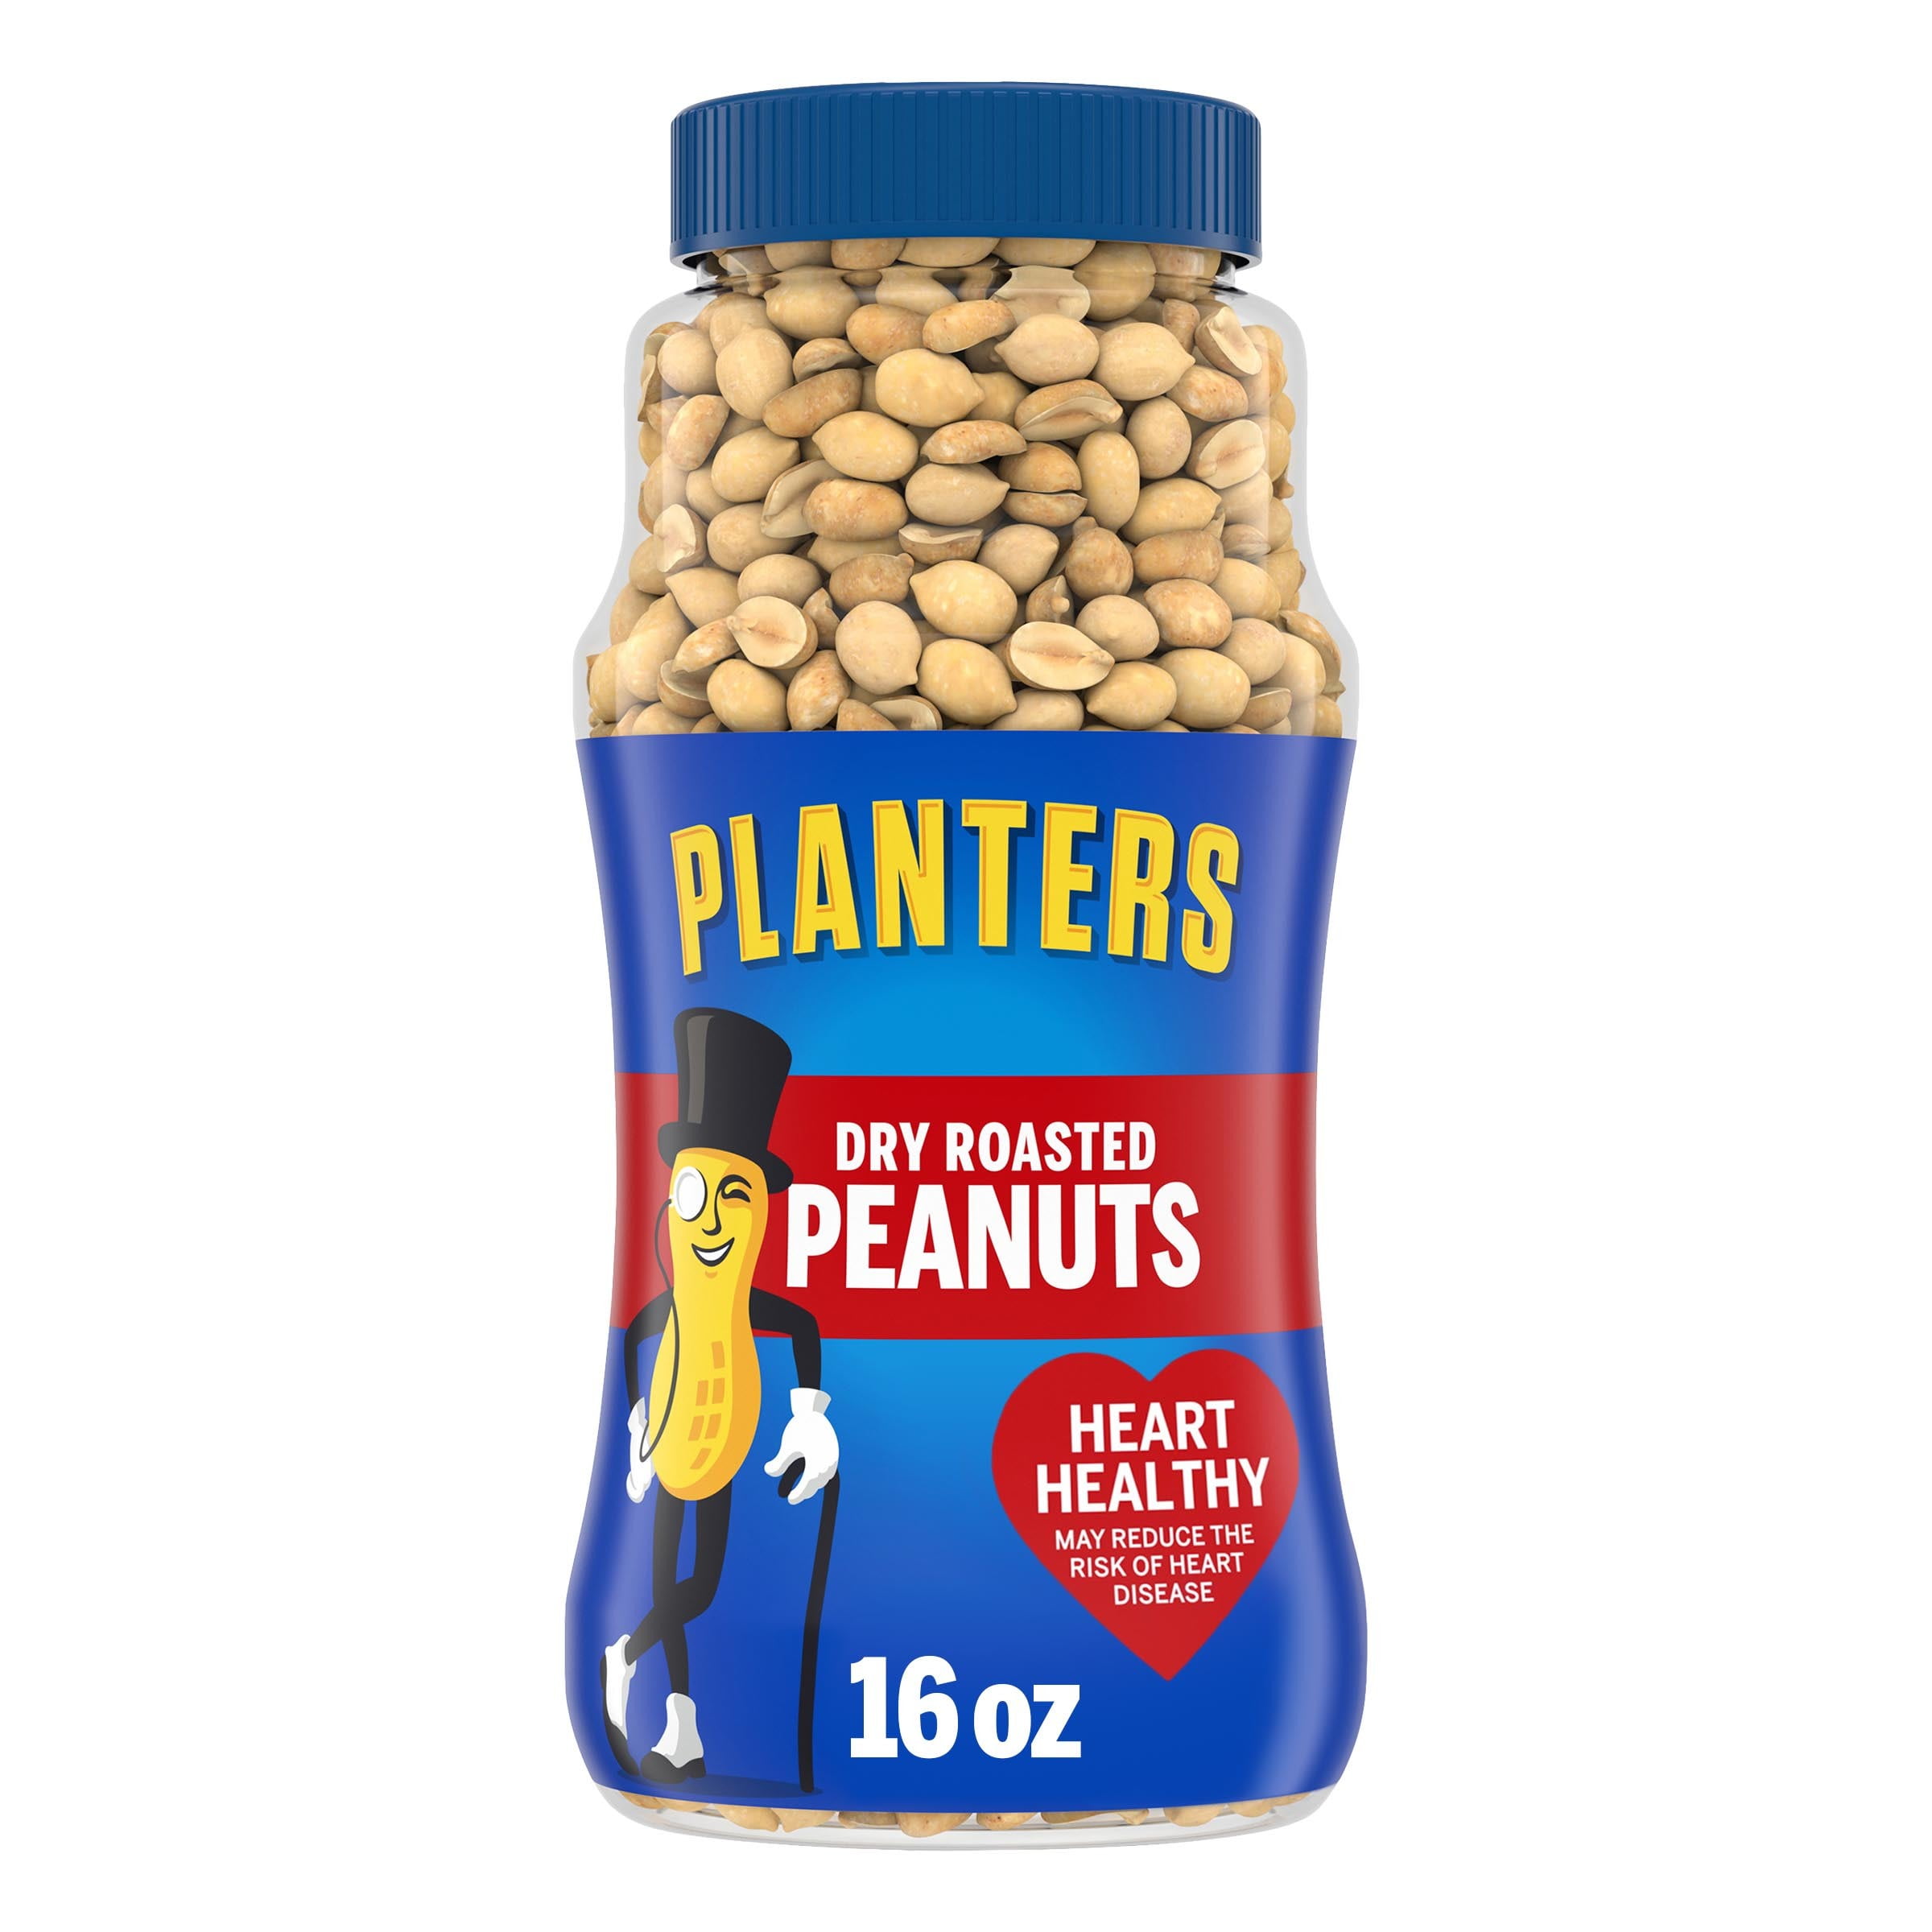 Planters Dry Roasted Peanuts, 16 oz Jar